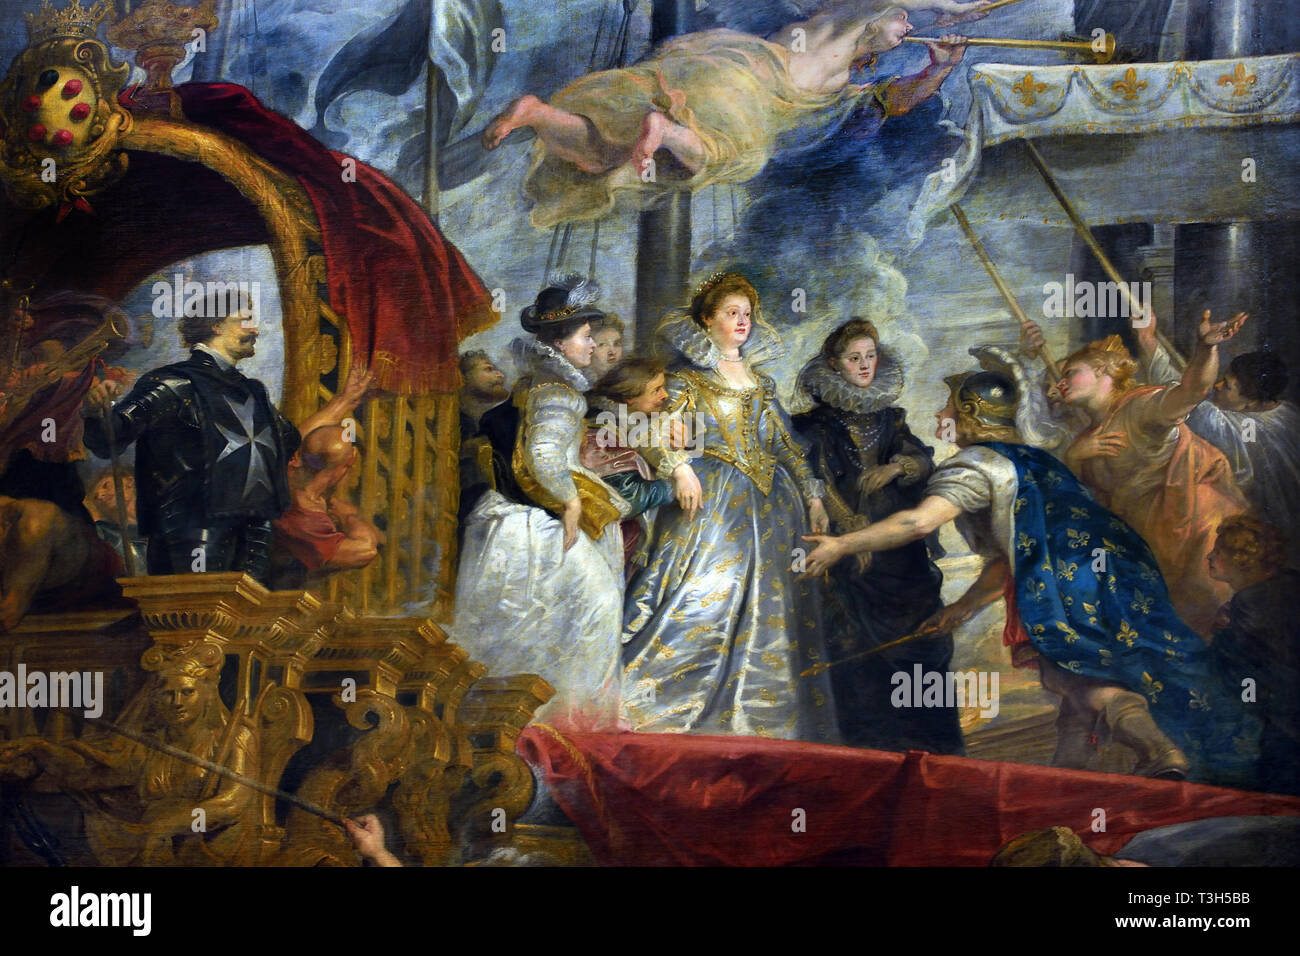 Lo sbarco a Marsiglia - La Marie de' Medici 1622-1624 ciclo da Peter Paul Rubens commissionata dalla regina Maria de' Medici, vedova del re Enrico IV di Francia, per il Palazzo del Lussemburgo a Parigi,(di seguito, Poseidone, tre nereidi, un mare-dio e Triton salire dal mare). Foto Stock